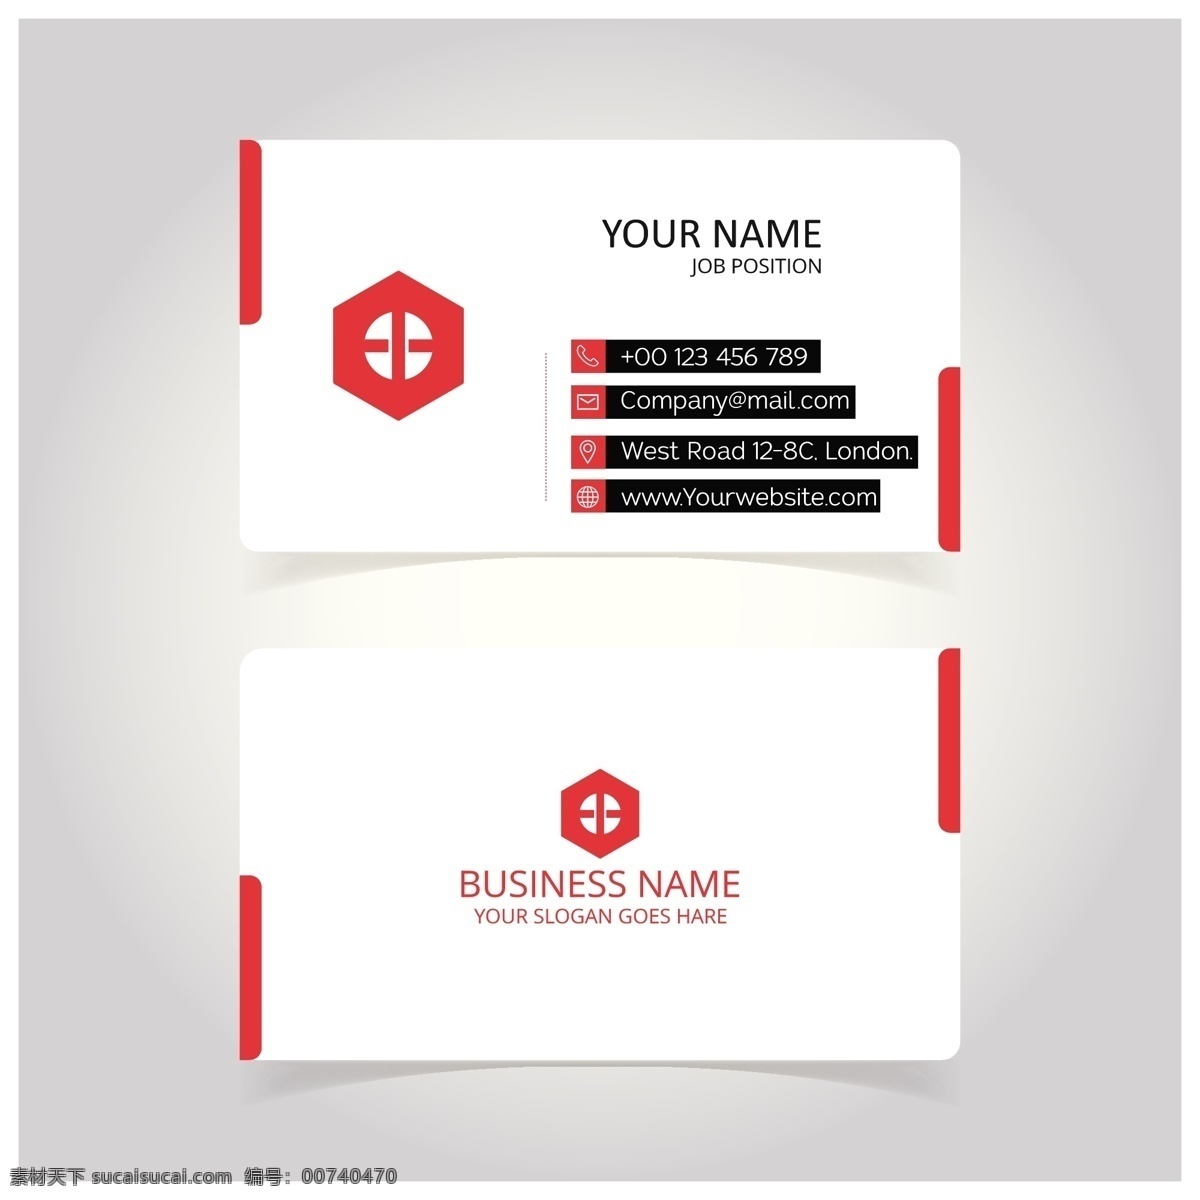 创意名片模板 商标 名片 商务 抽象 卡片 模板 办公室 展示 文具 公司 抽象标志 企业标识 品牌 现代 身份证